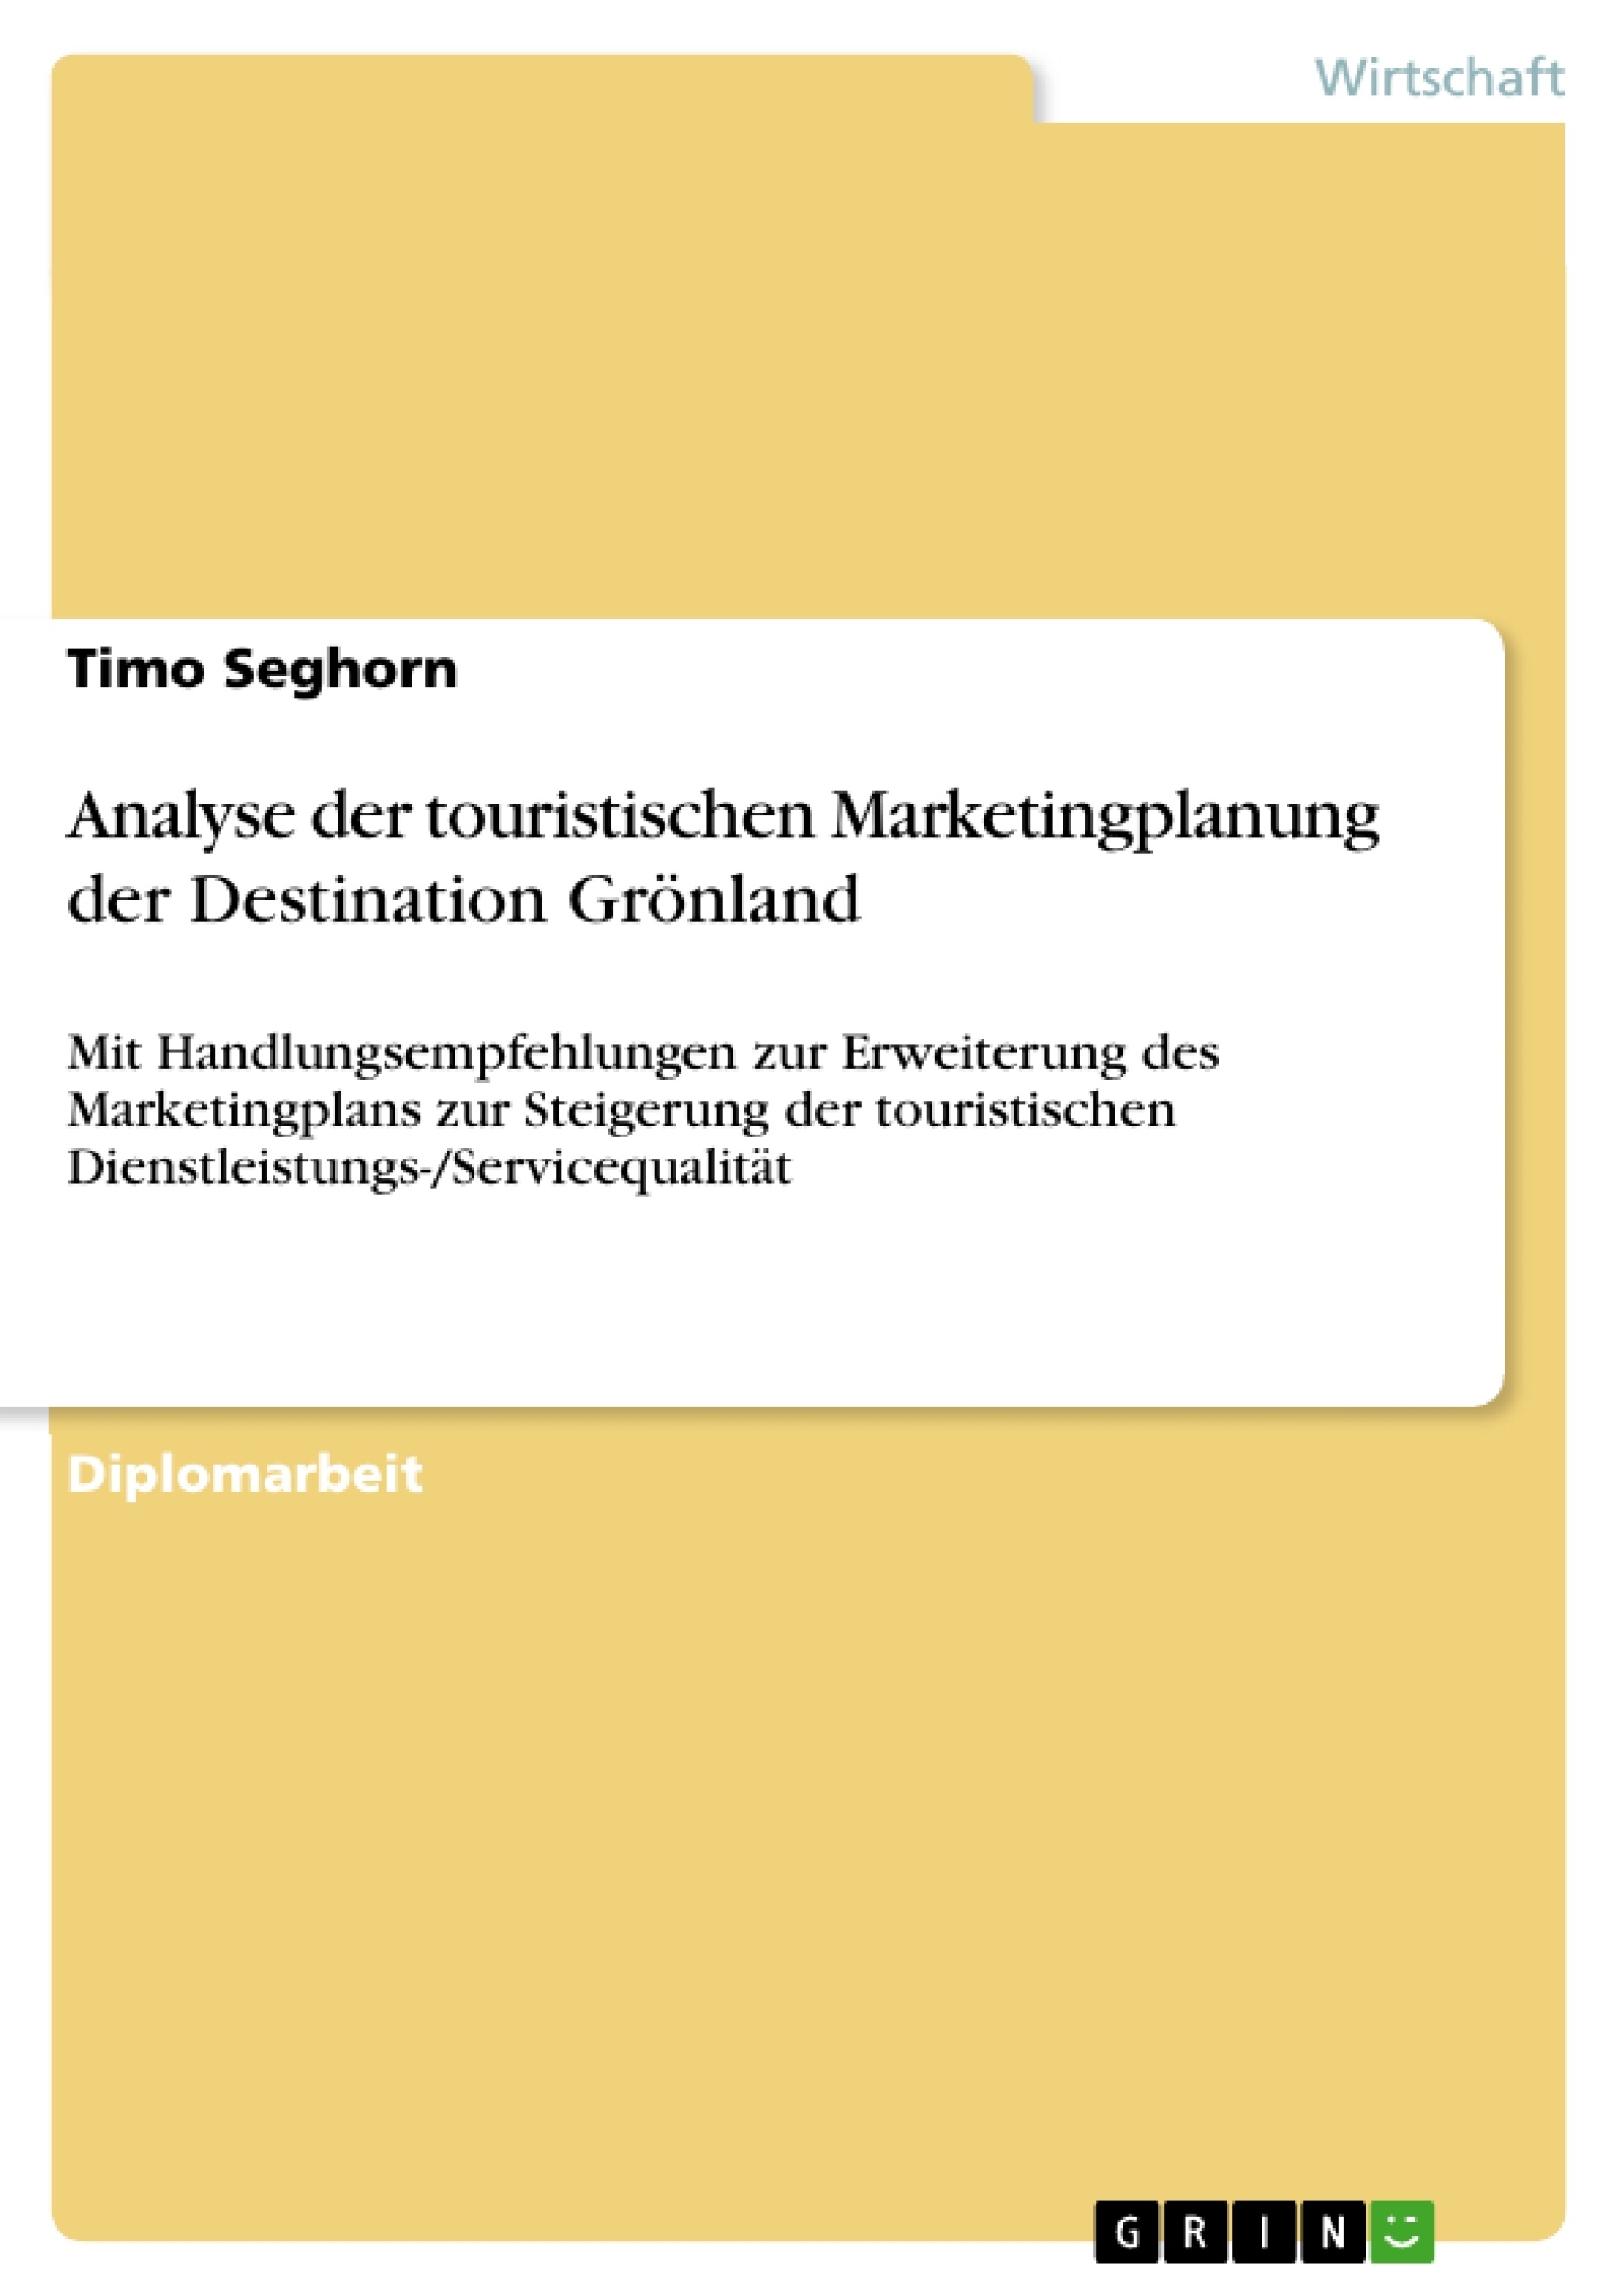 Título: Analyse der touristischen Marketingplanung der Destination Grönland